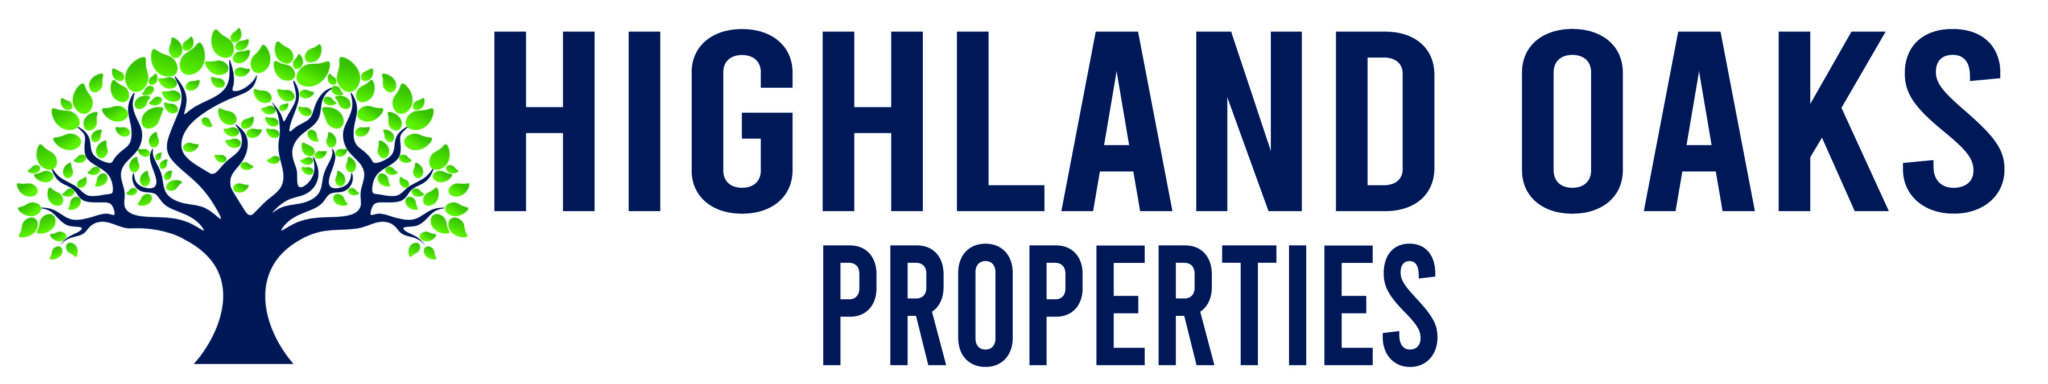 Highland Oaks Properties